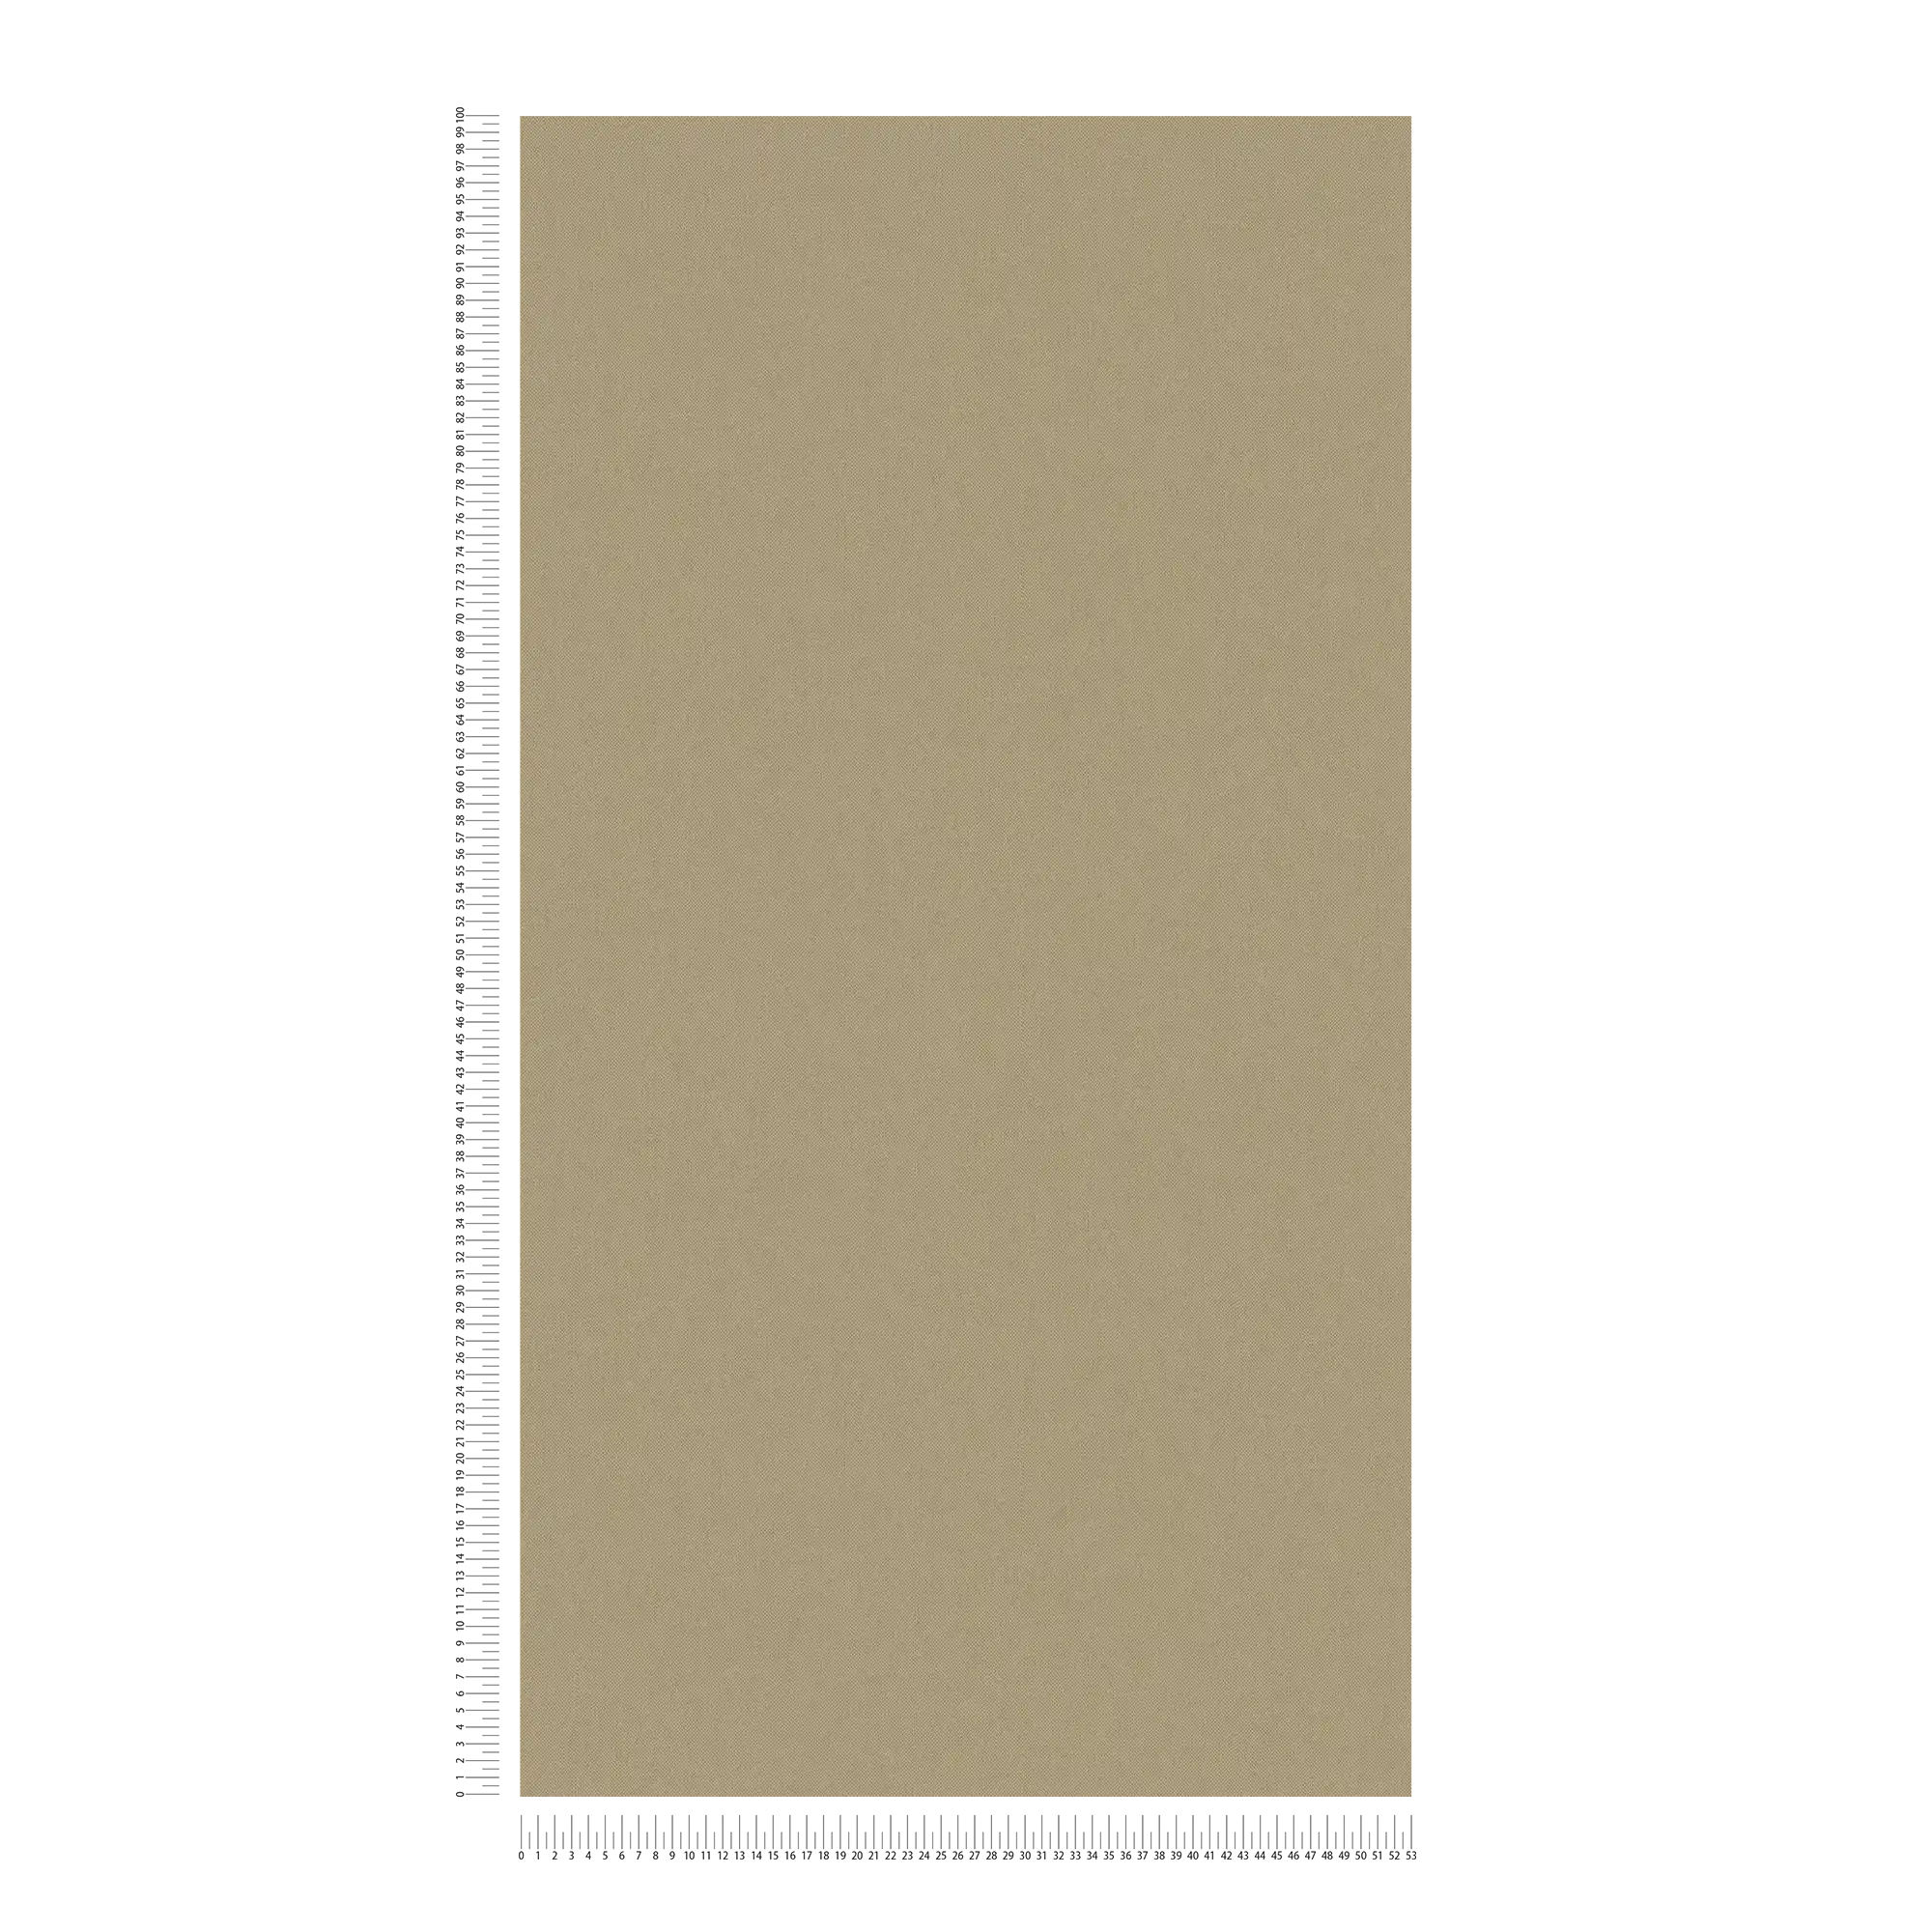             Papier peint intissé uni marron mat kaki avec structure textile
        